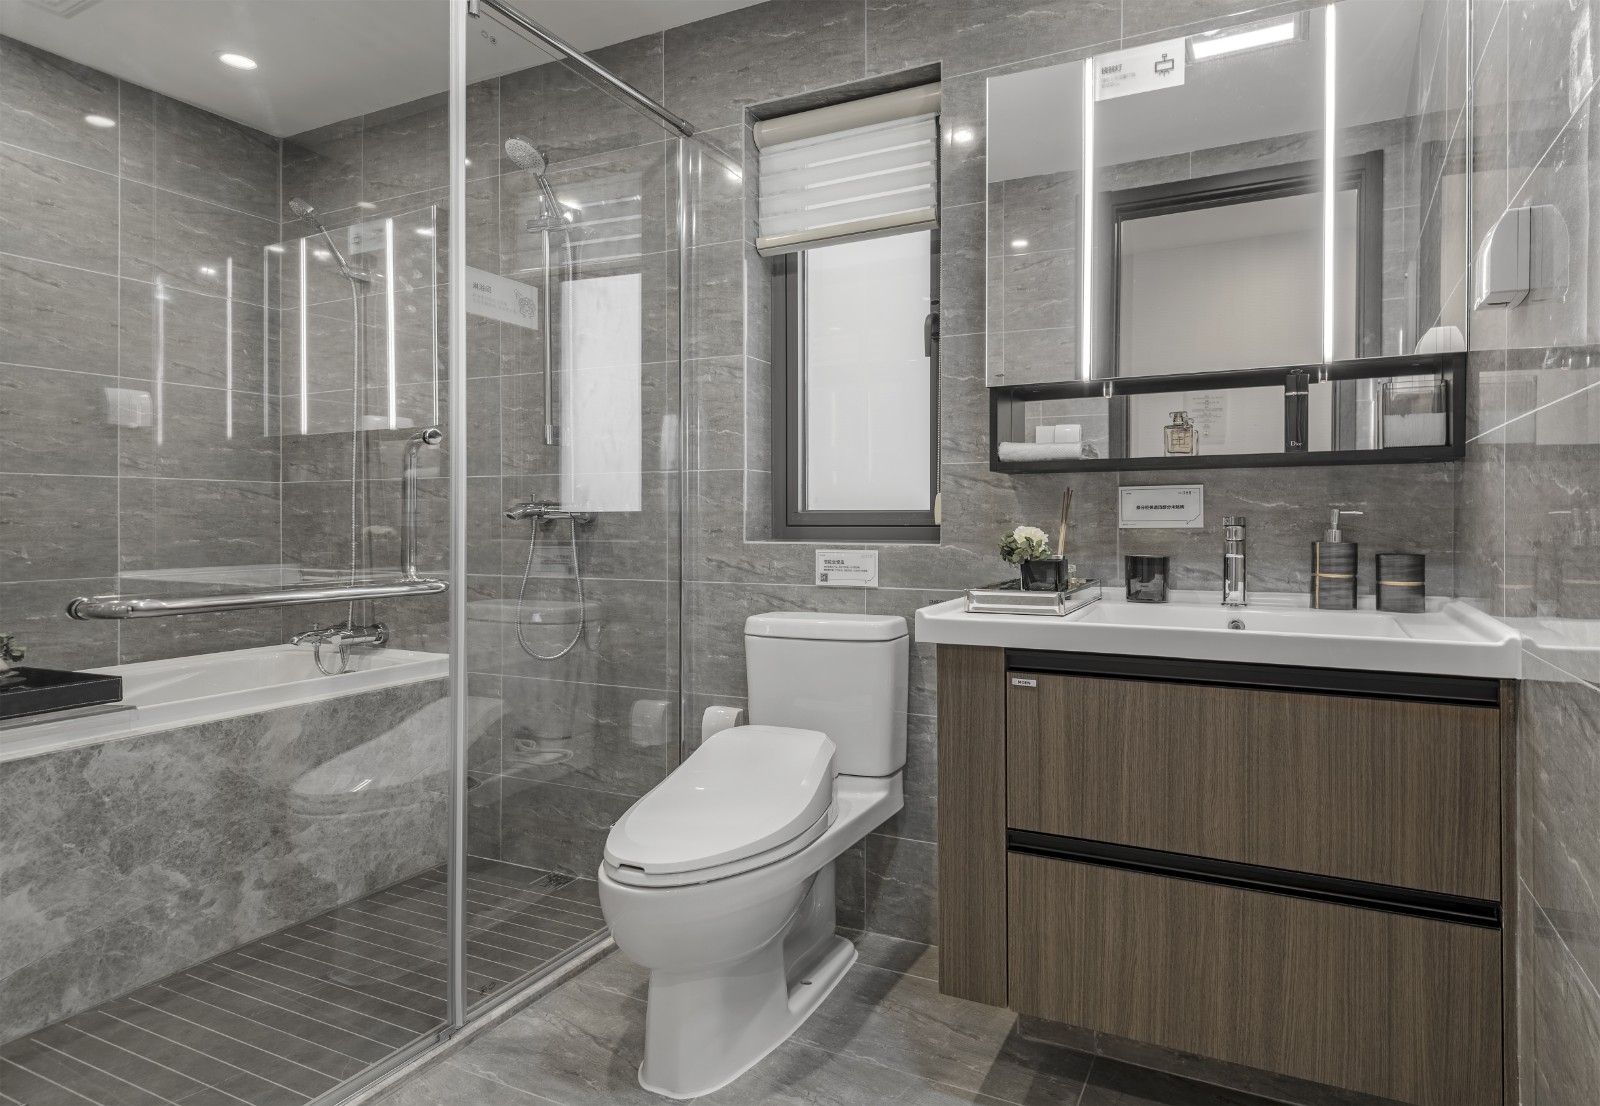 卫浴空间采用玻璃进行干湿分离，让整个空间有着一种干净优雅的时尚设计感。